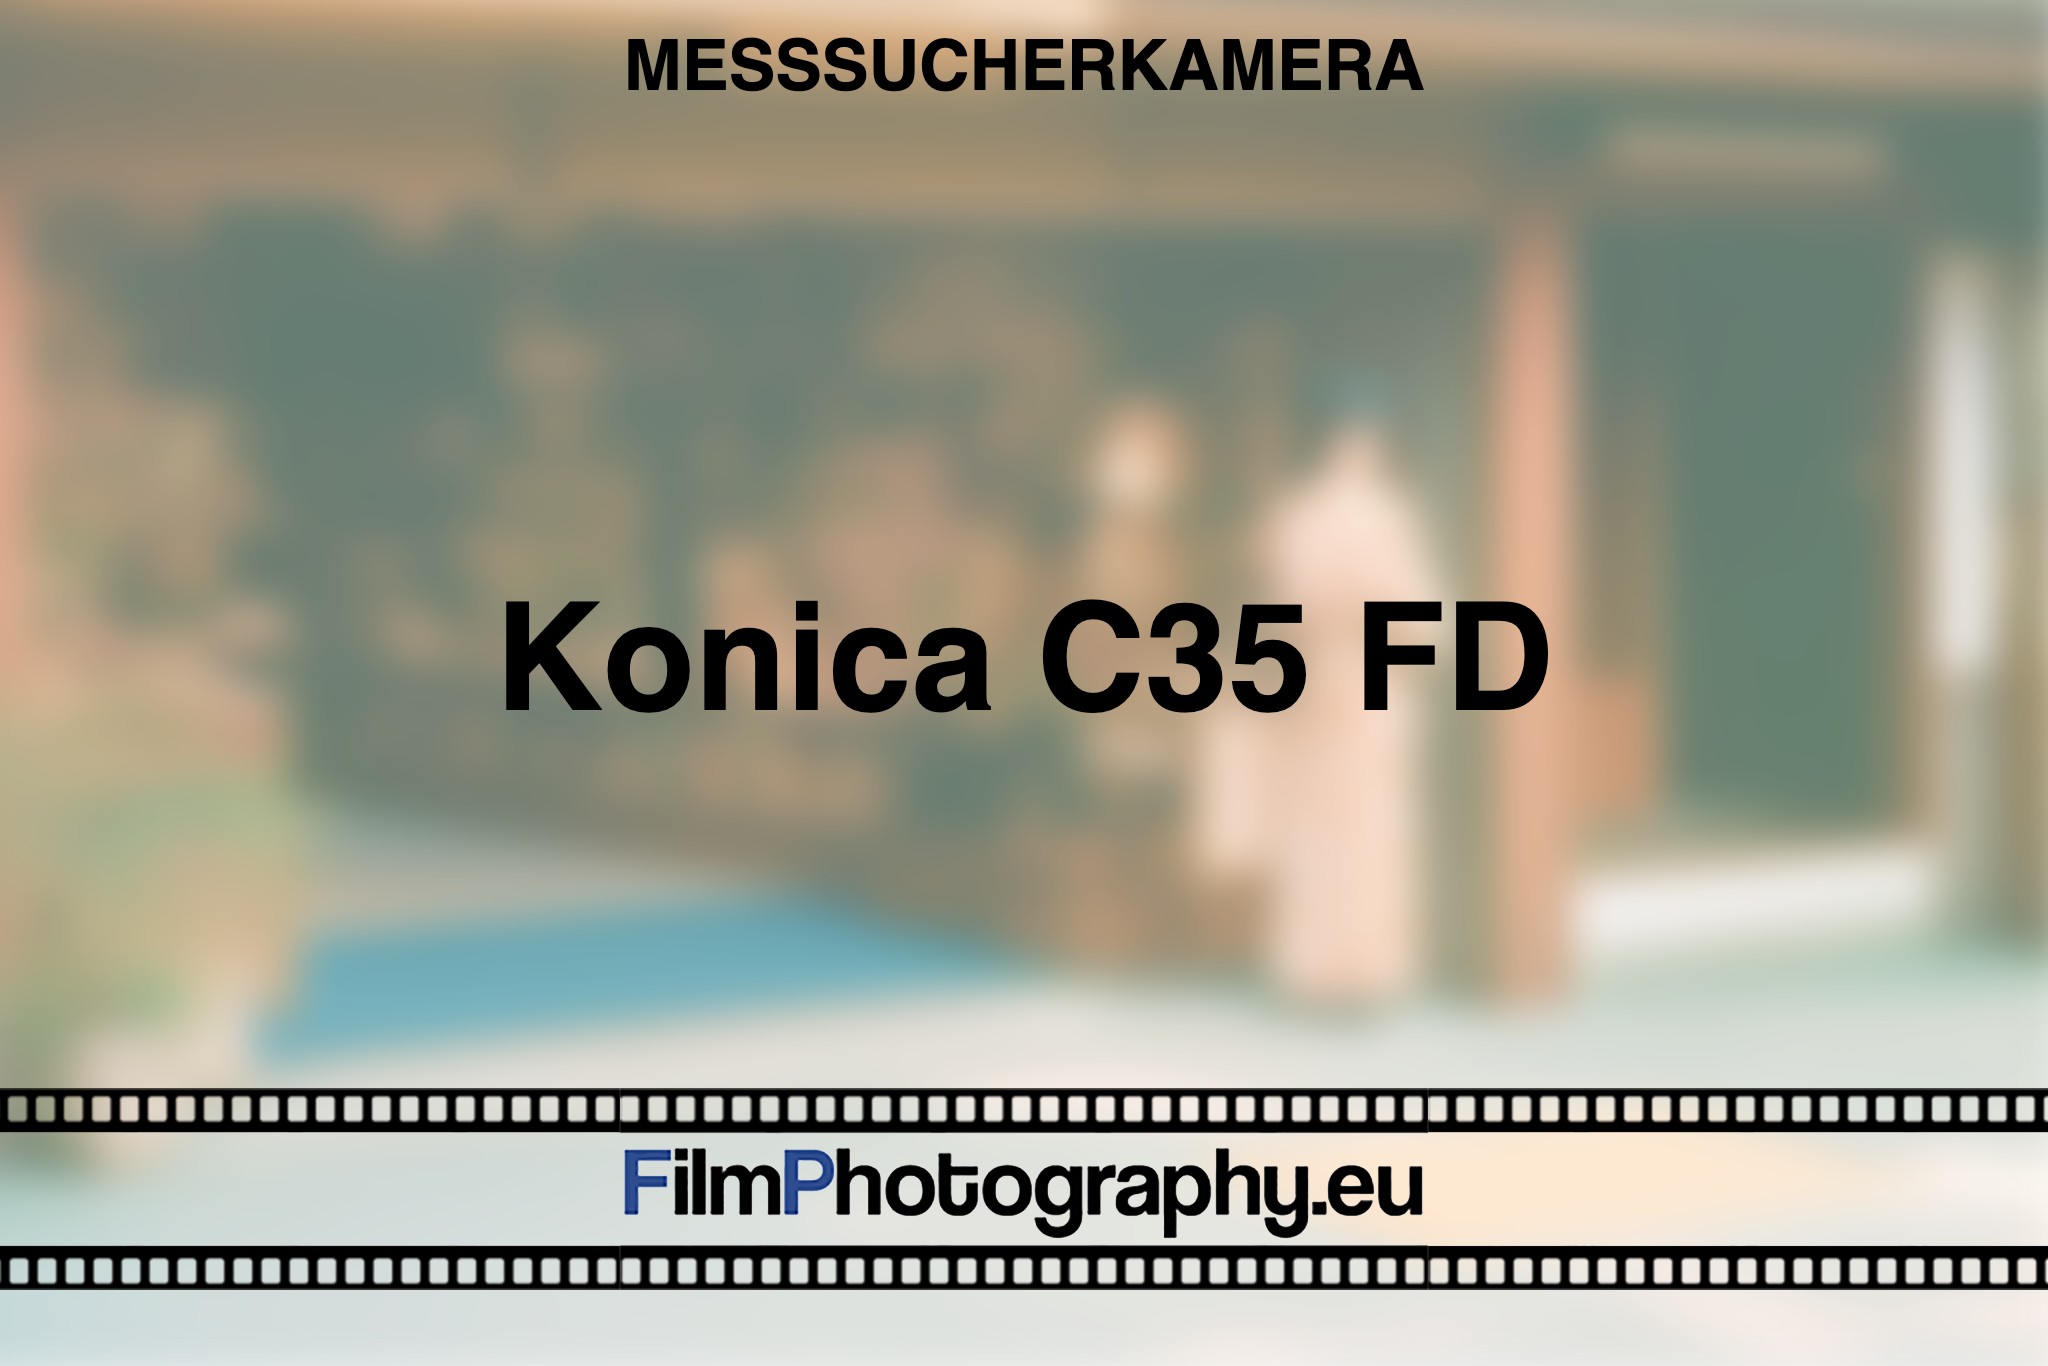 konica-c35-fd-messsucherkamera-bnv